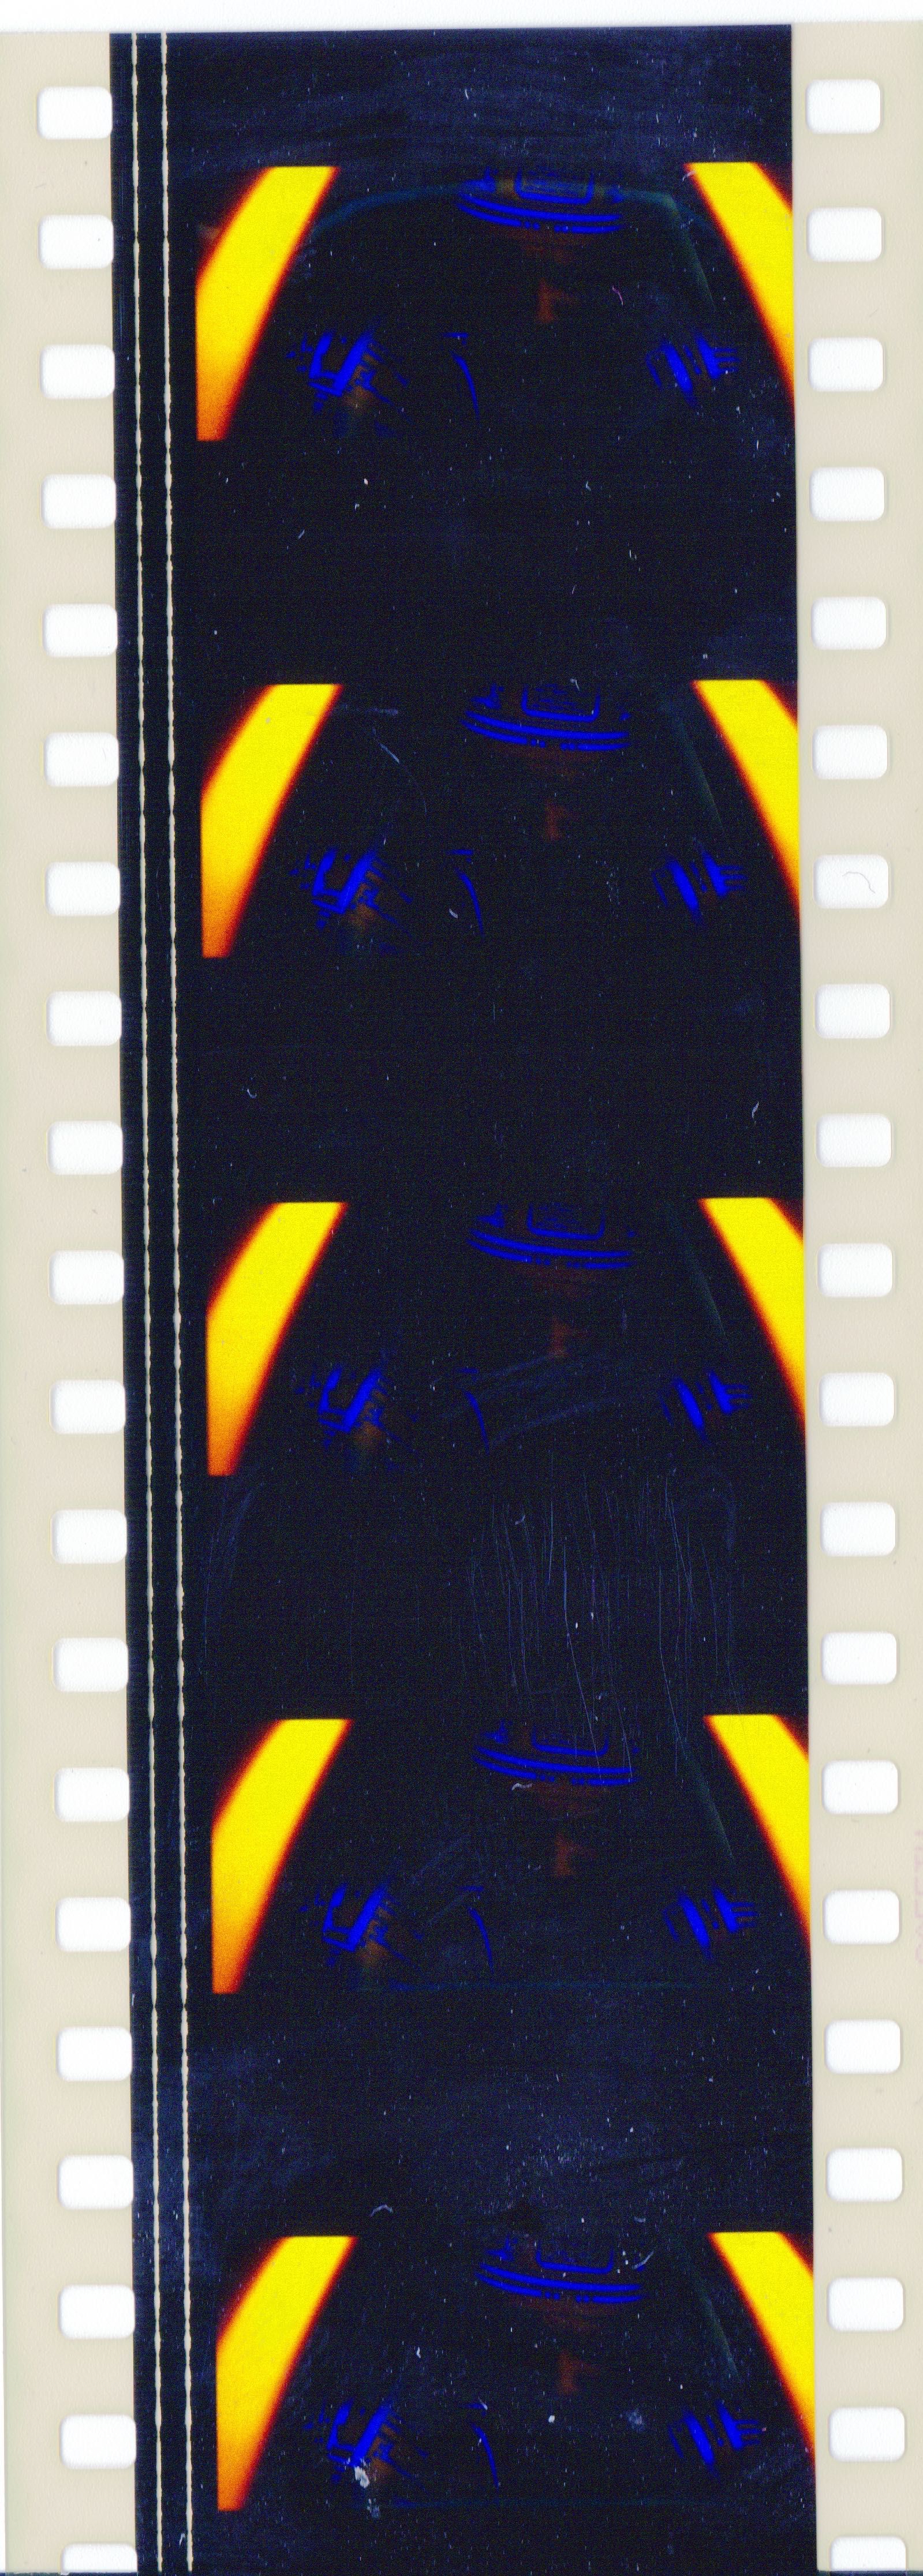 Fotogramas em película 35mm do filme culto TRON